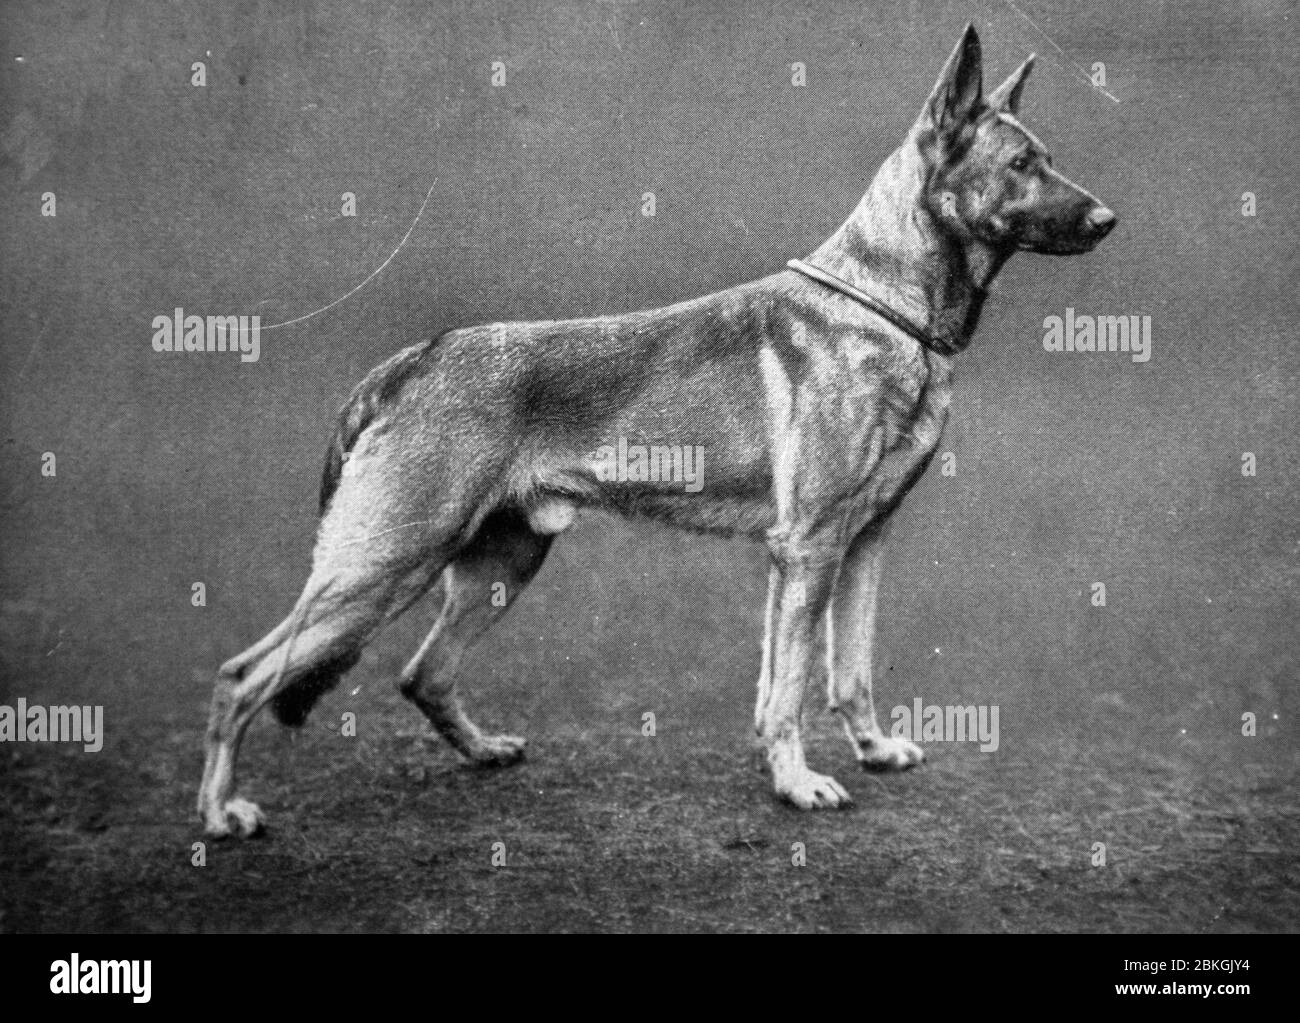 Jungtell von der Kriminalpolizei - Deutscher Schäferhund, alte historische schwarz-weiße Fotografie Stockfoto